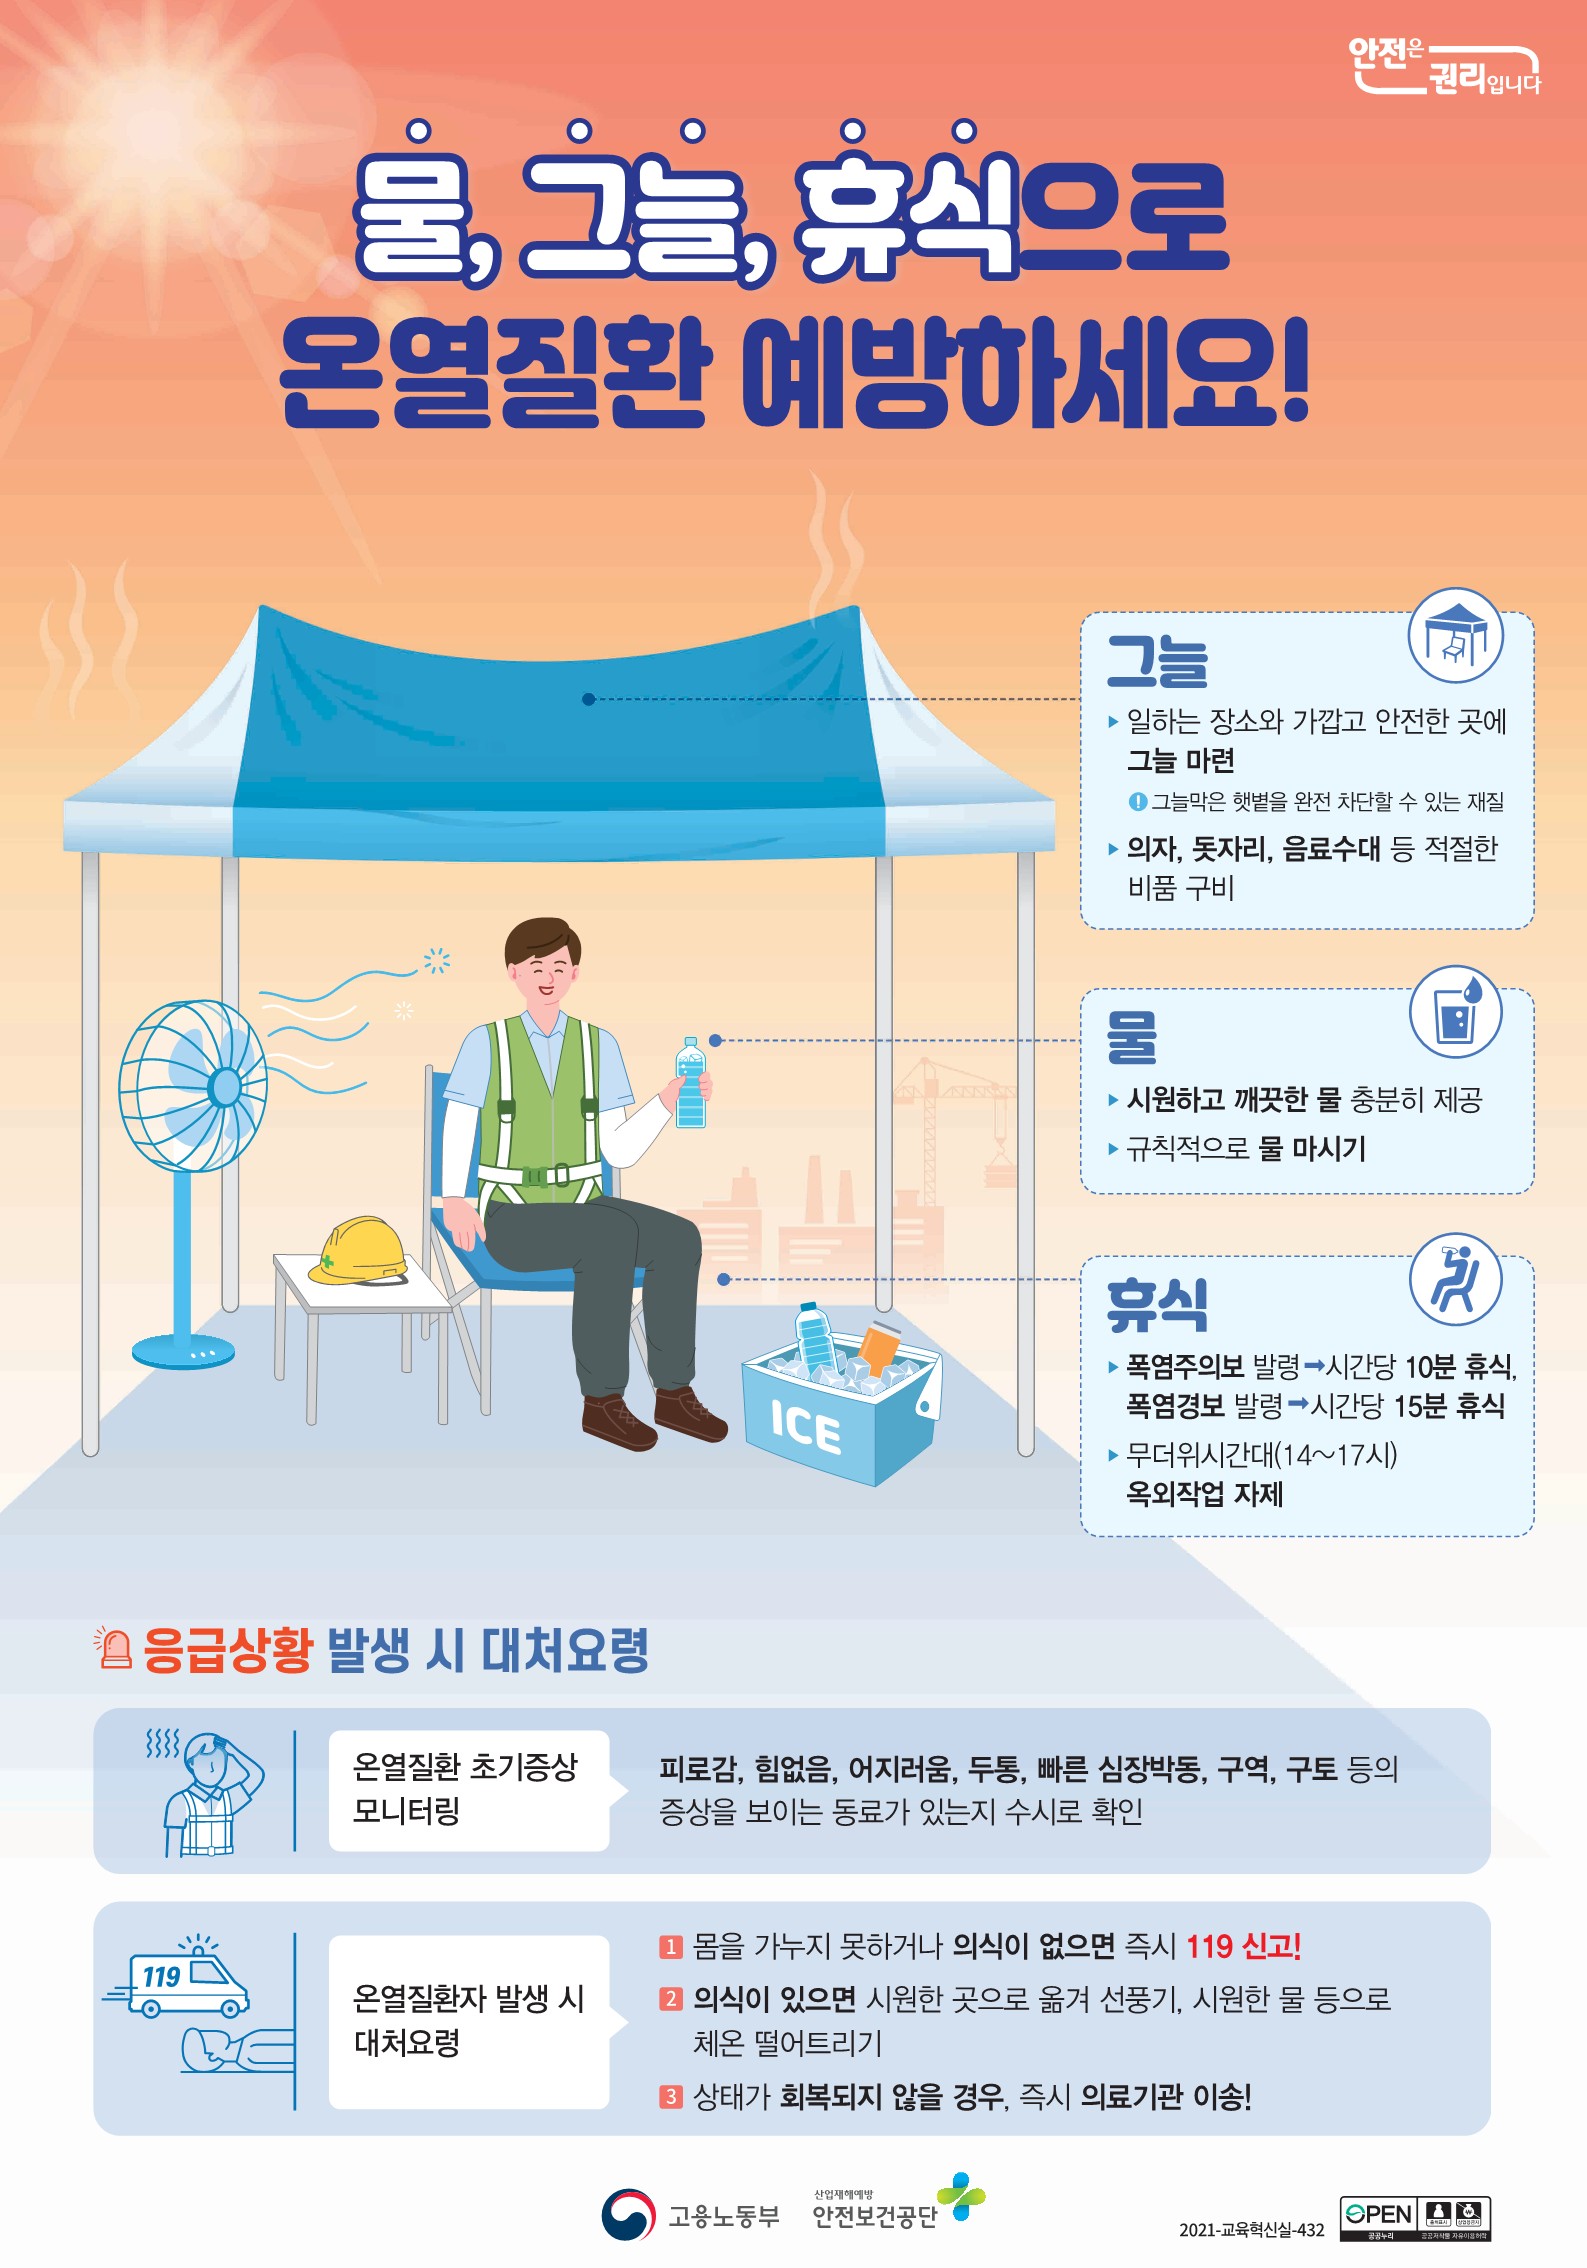 붙임3. 폭염 온열질환 예방 포스터(안전보건공단).jpg